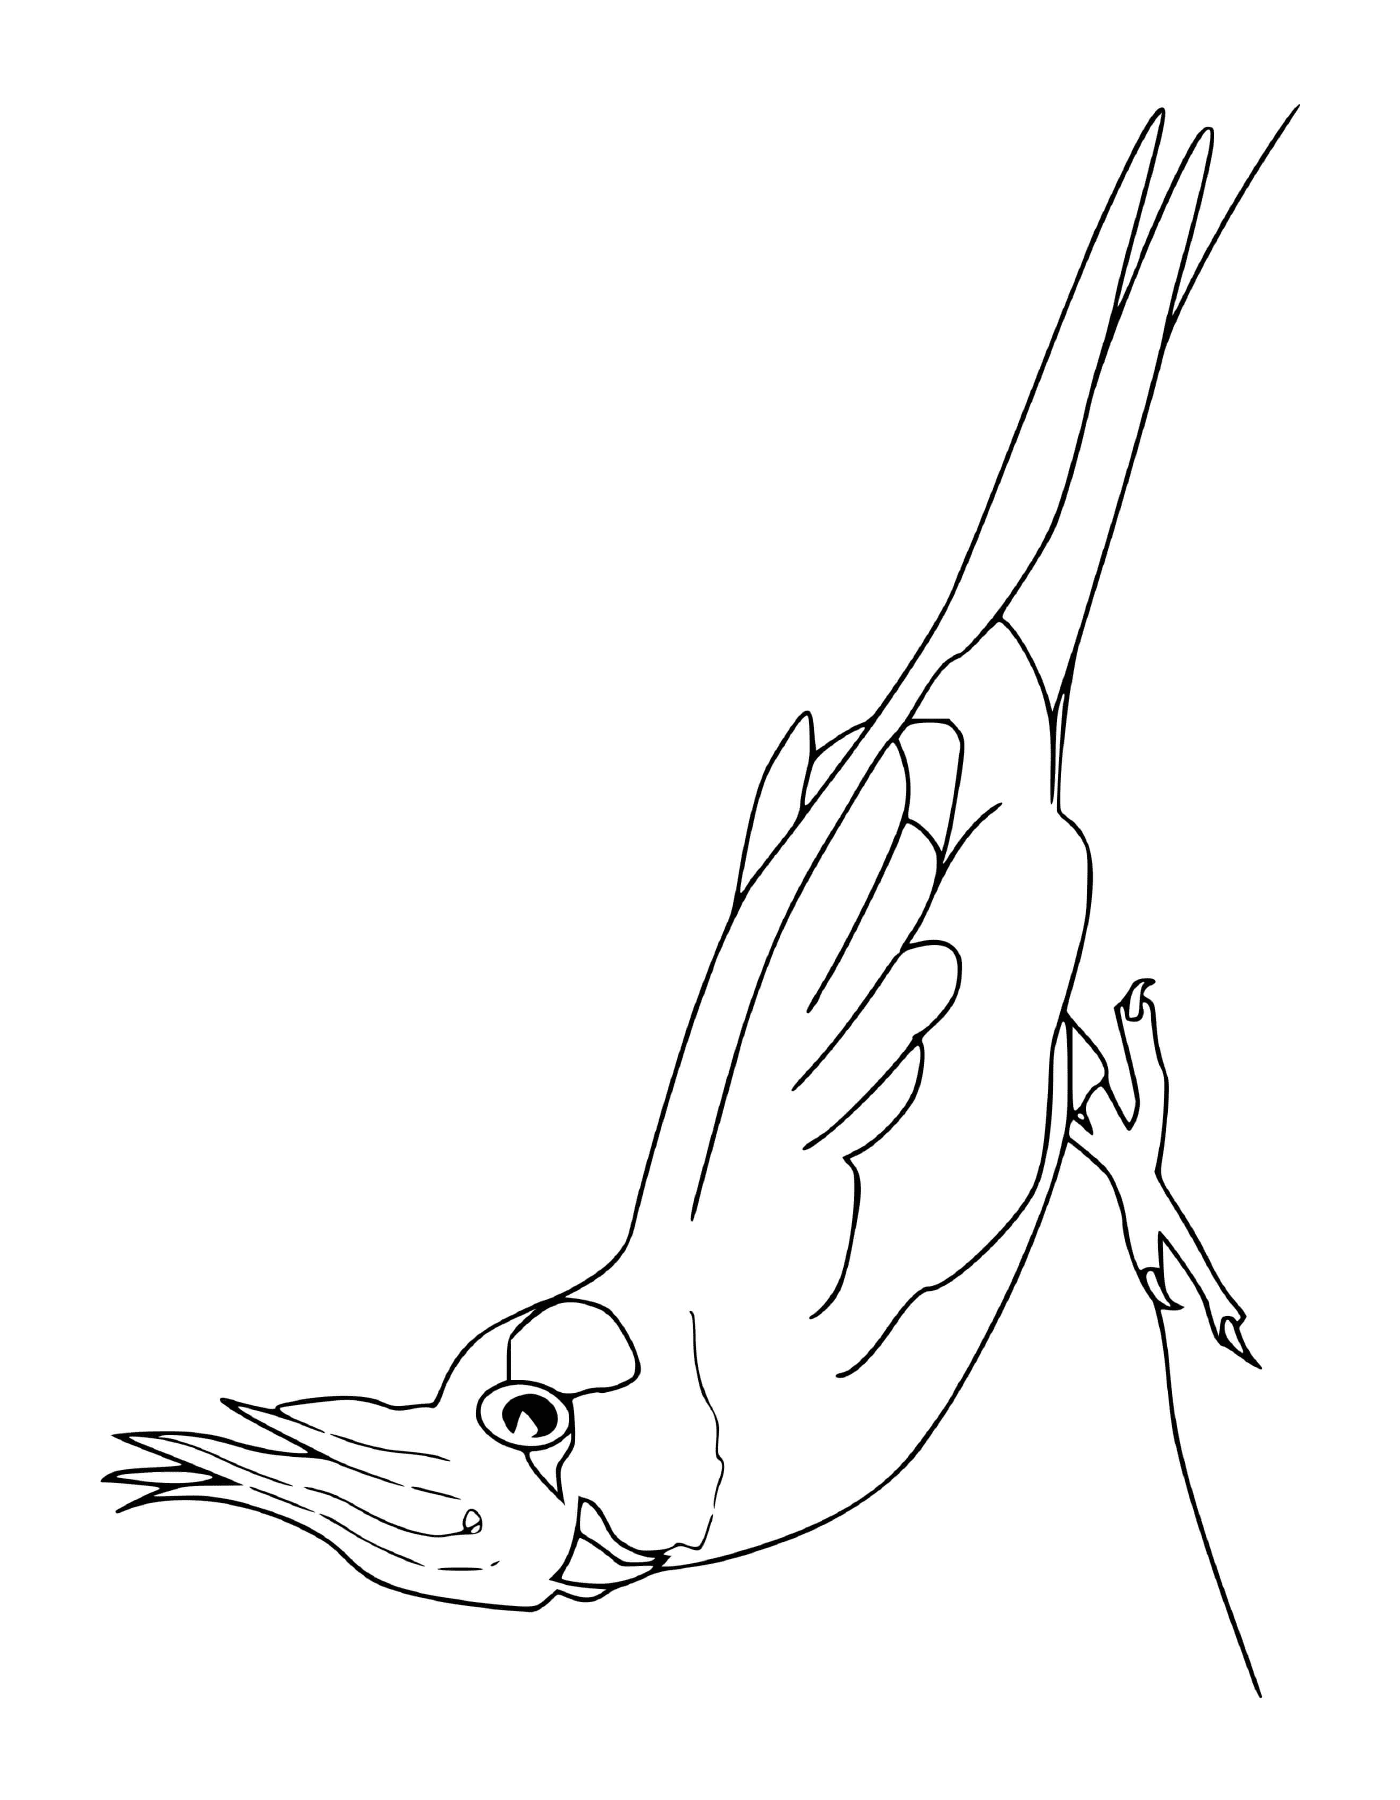  bird extending its wings 